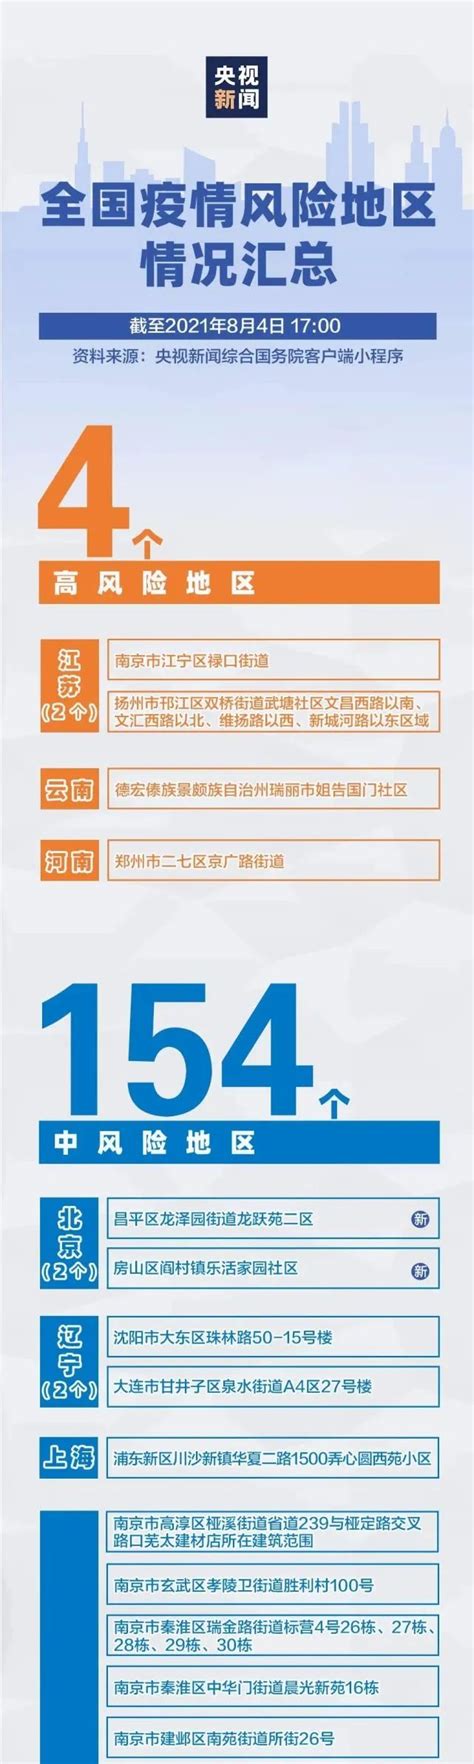 繁昌农商银行多举措合力战“疫” - 芜湖市银行业协会官网